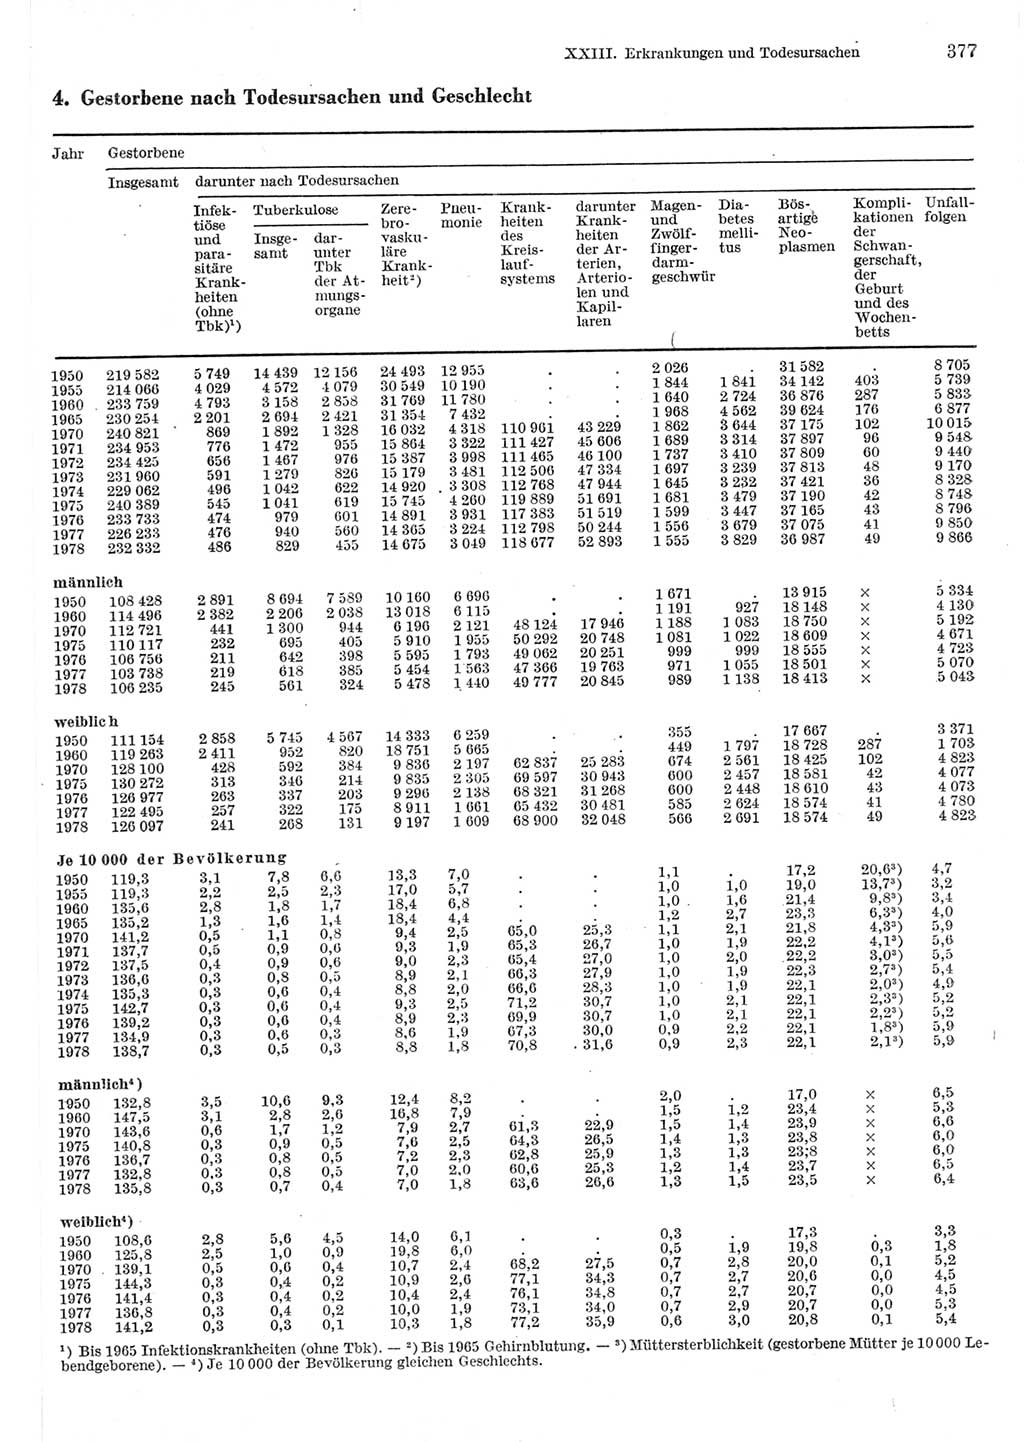 Statistisches Jahrbuch der Deutschen Demokratischen Republik (DDR) 1980, Seite 377 (Stat. Jb. DDR 1980, S. 377)